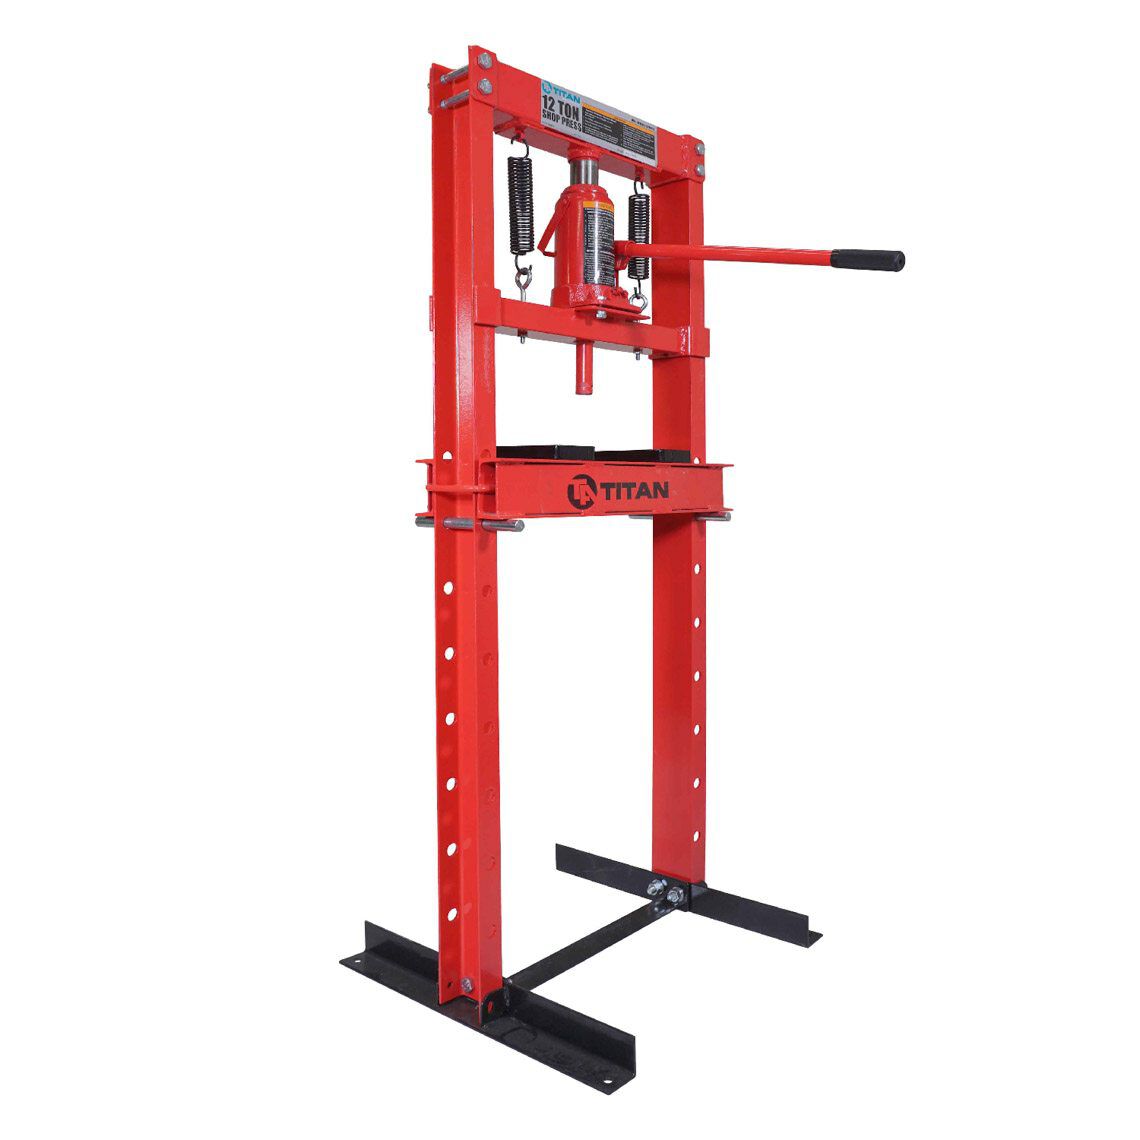 Hydraulic 12 Ton H-Frame Floor Press Shop Press Garage Heavy Duty Machinery 